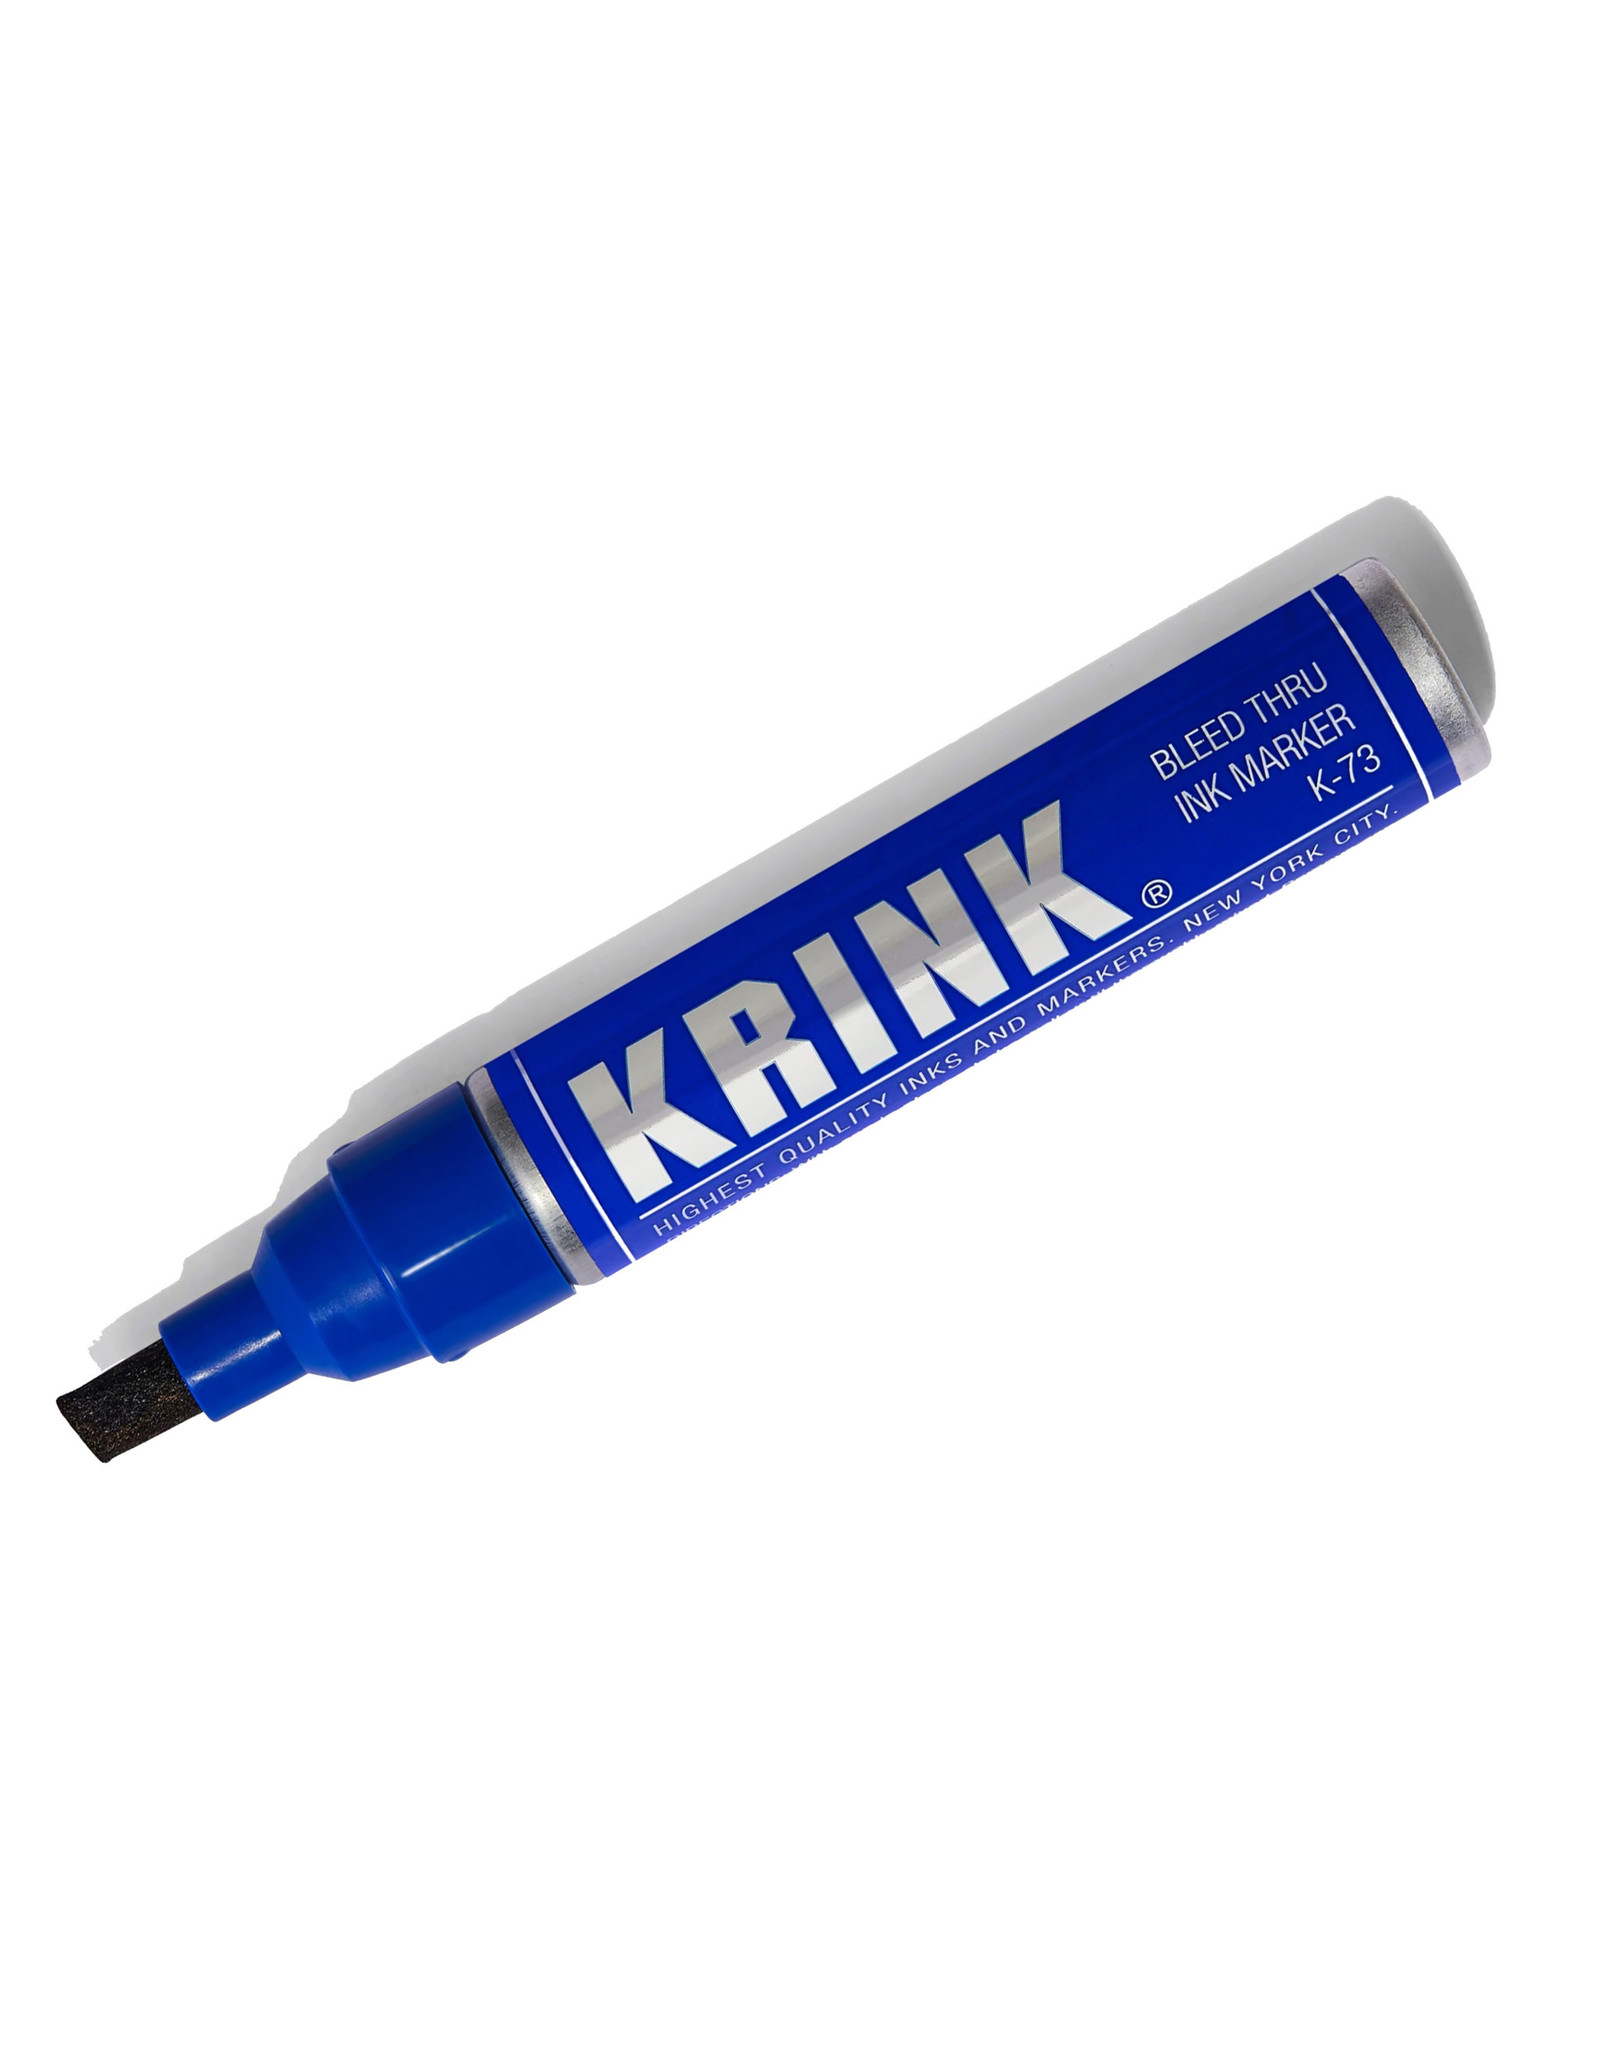 Krink K-73 Bleed Thru Ink Marker Bleed Thru Blue 7mm - The Art  Store/Commercial Art Supply